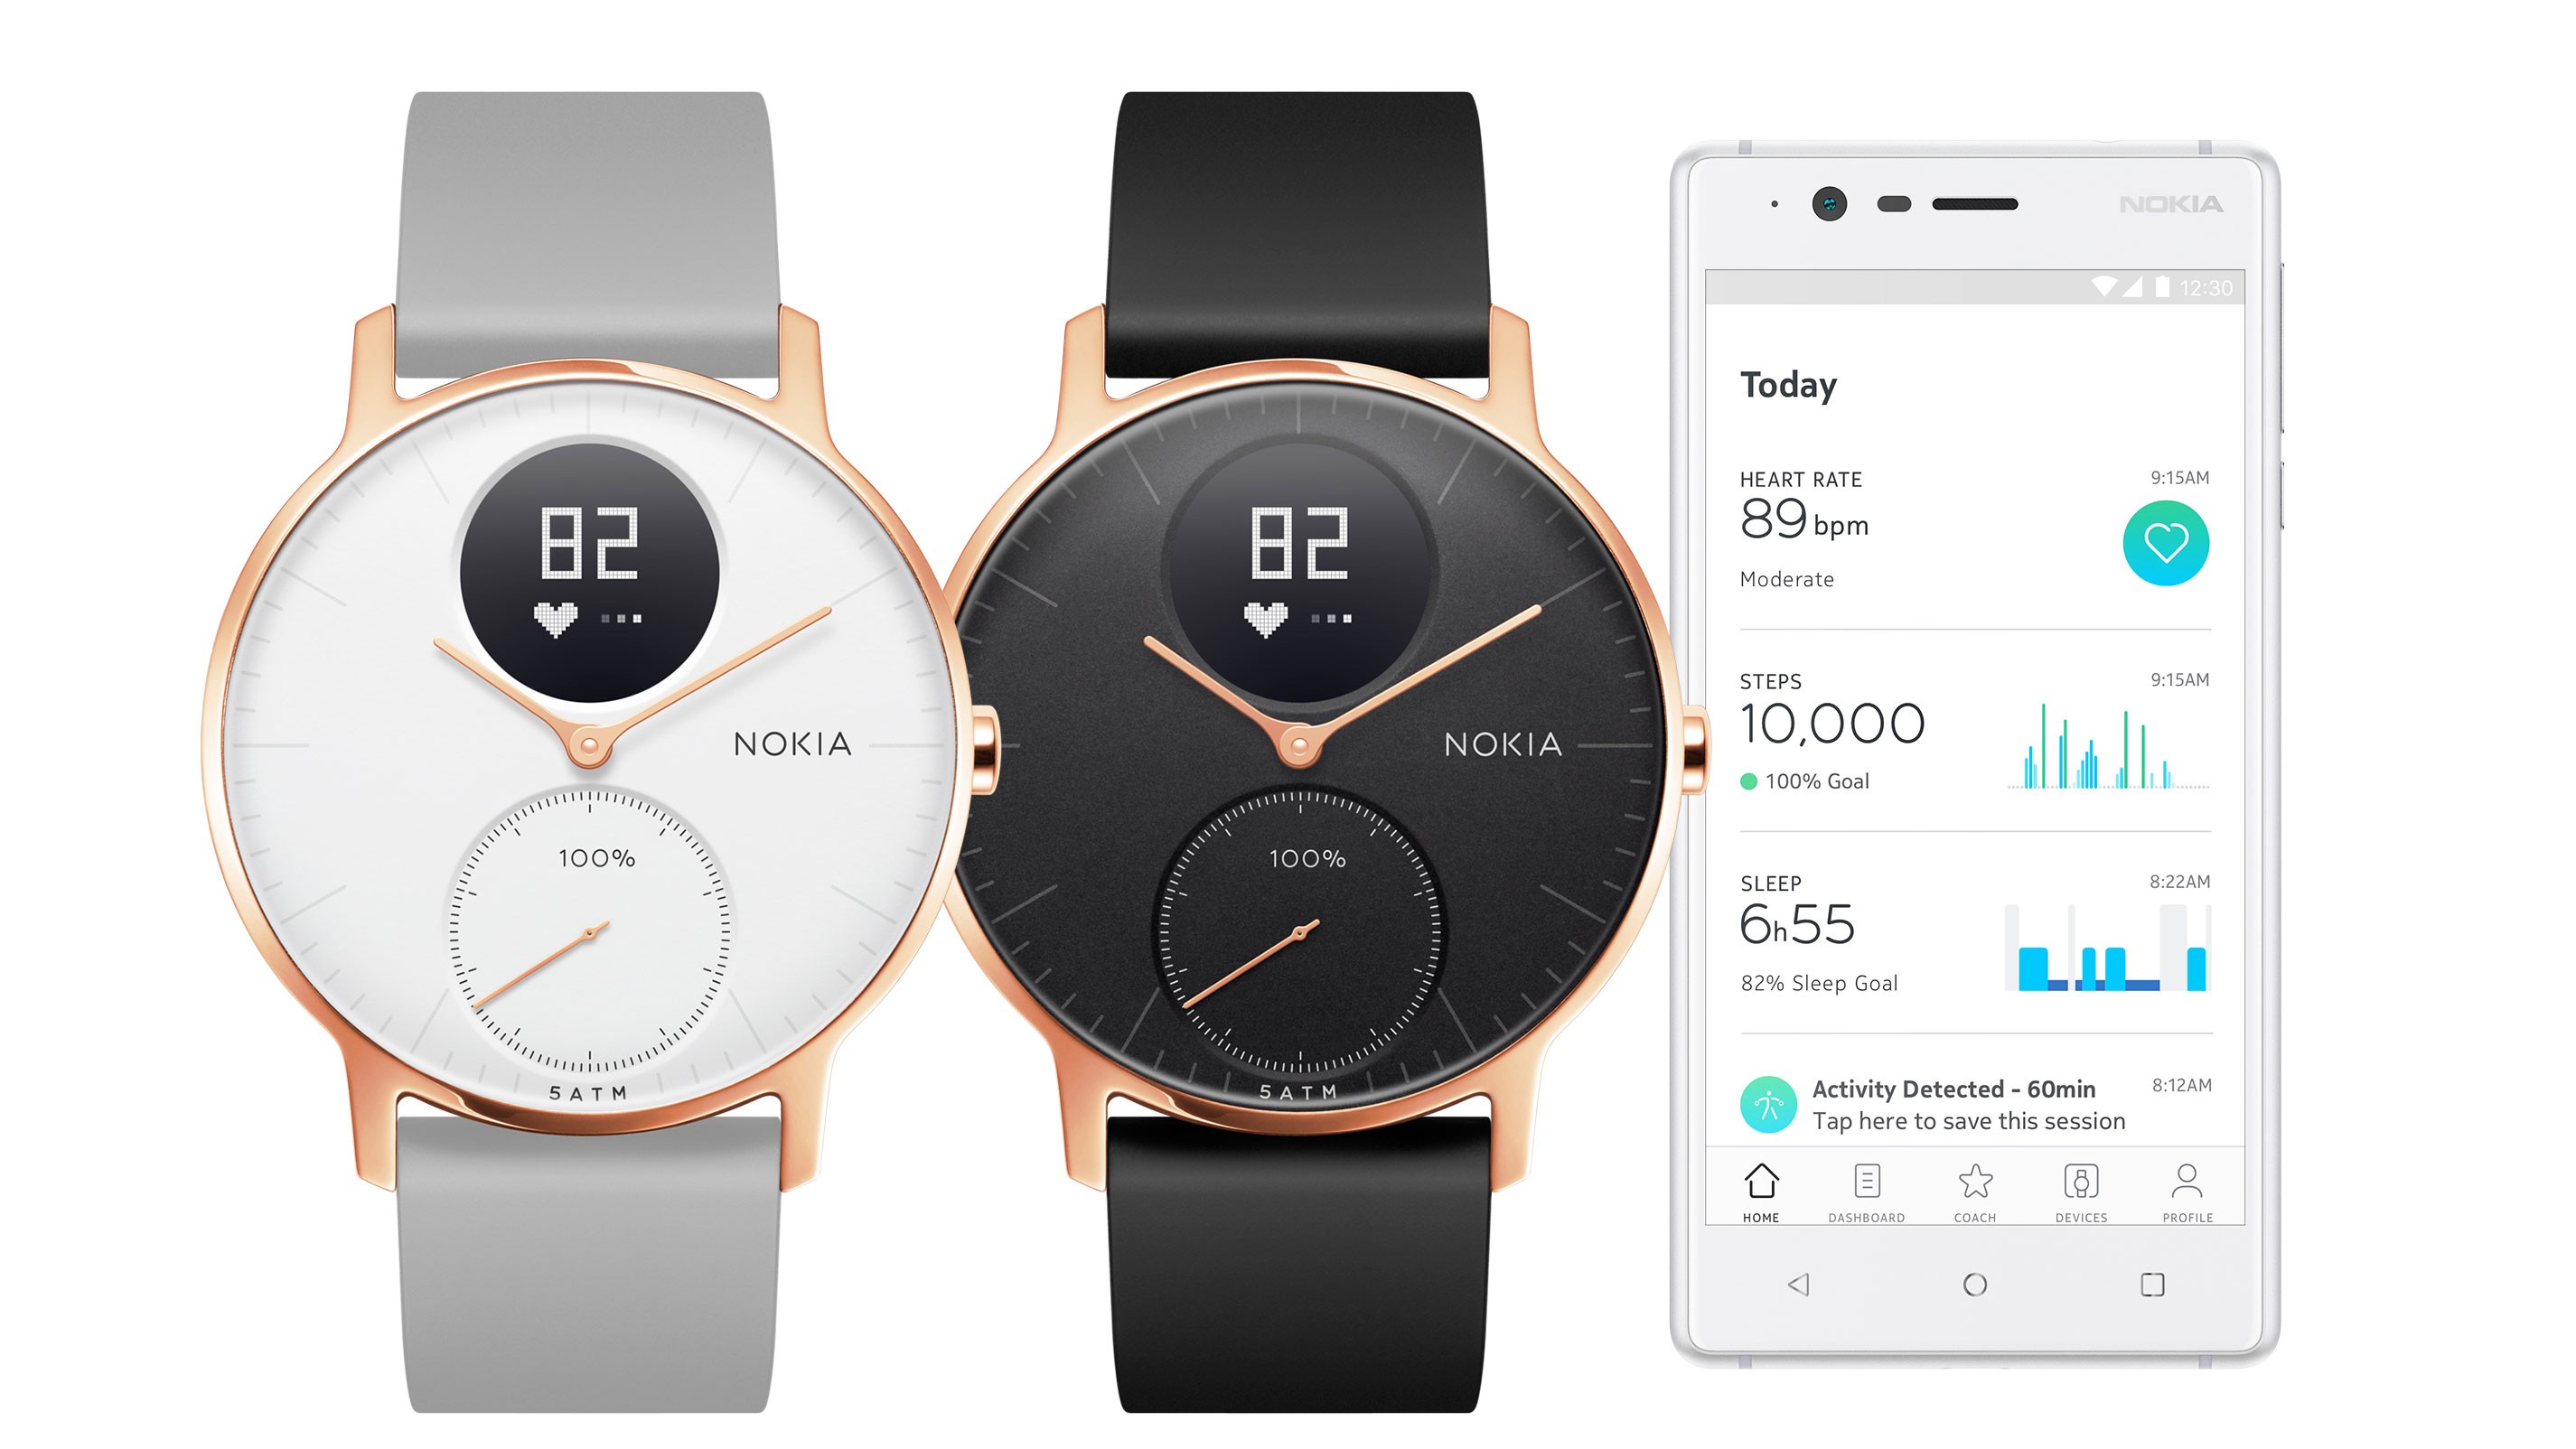 The Nokia Steel HR fitness tracker looks like an old-school wristwatch.